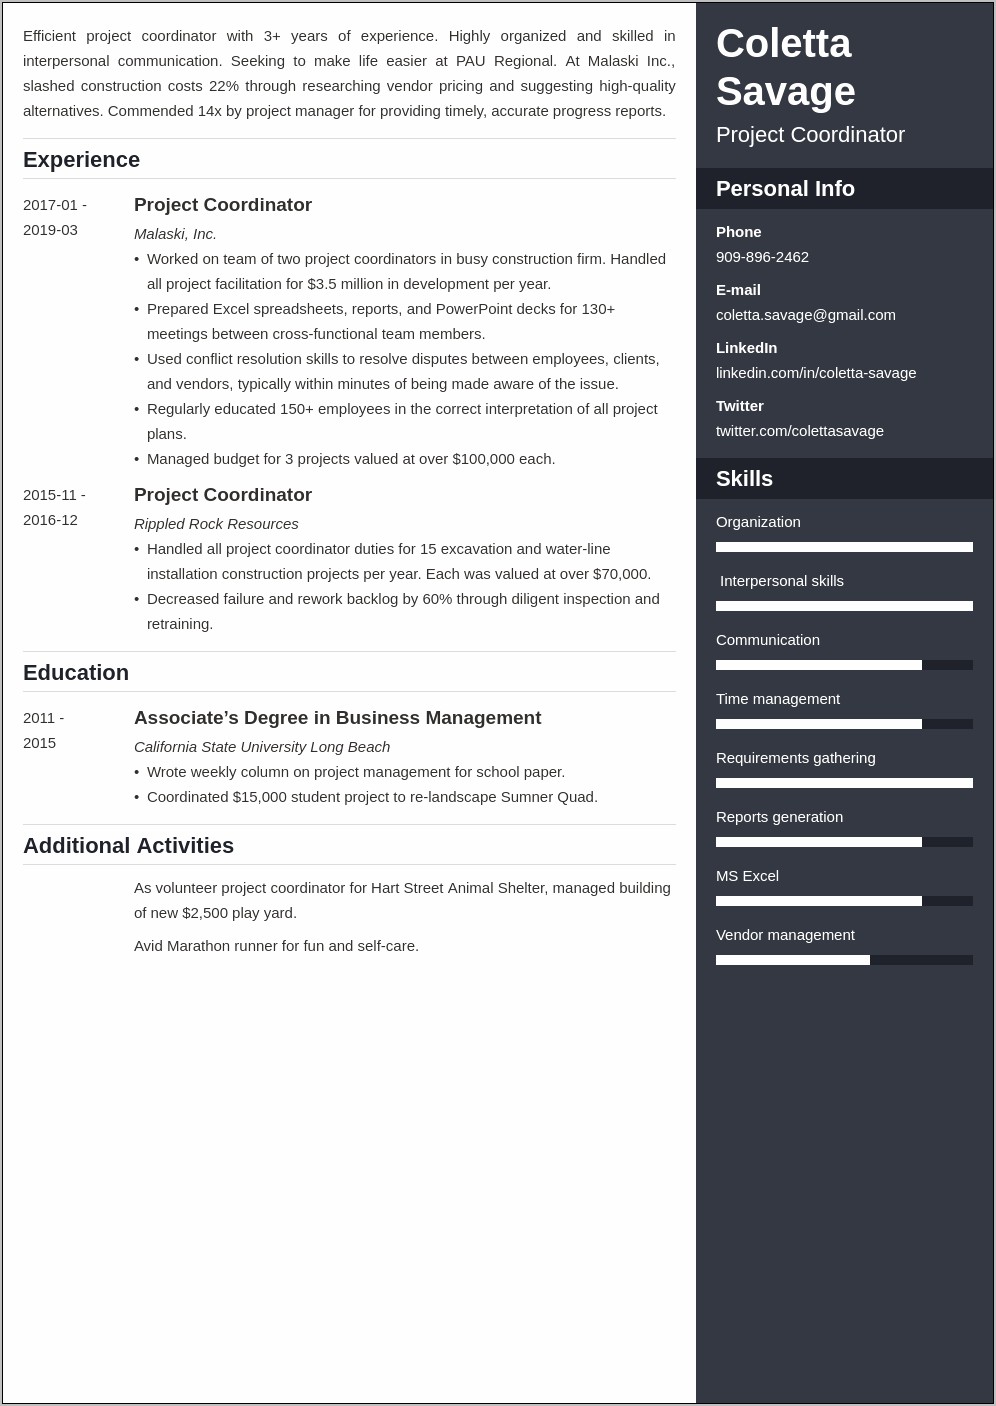 Project Coordinator Job Description Sample Resume